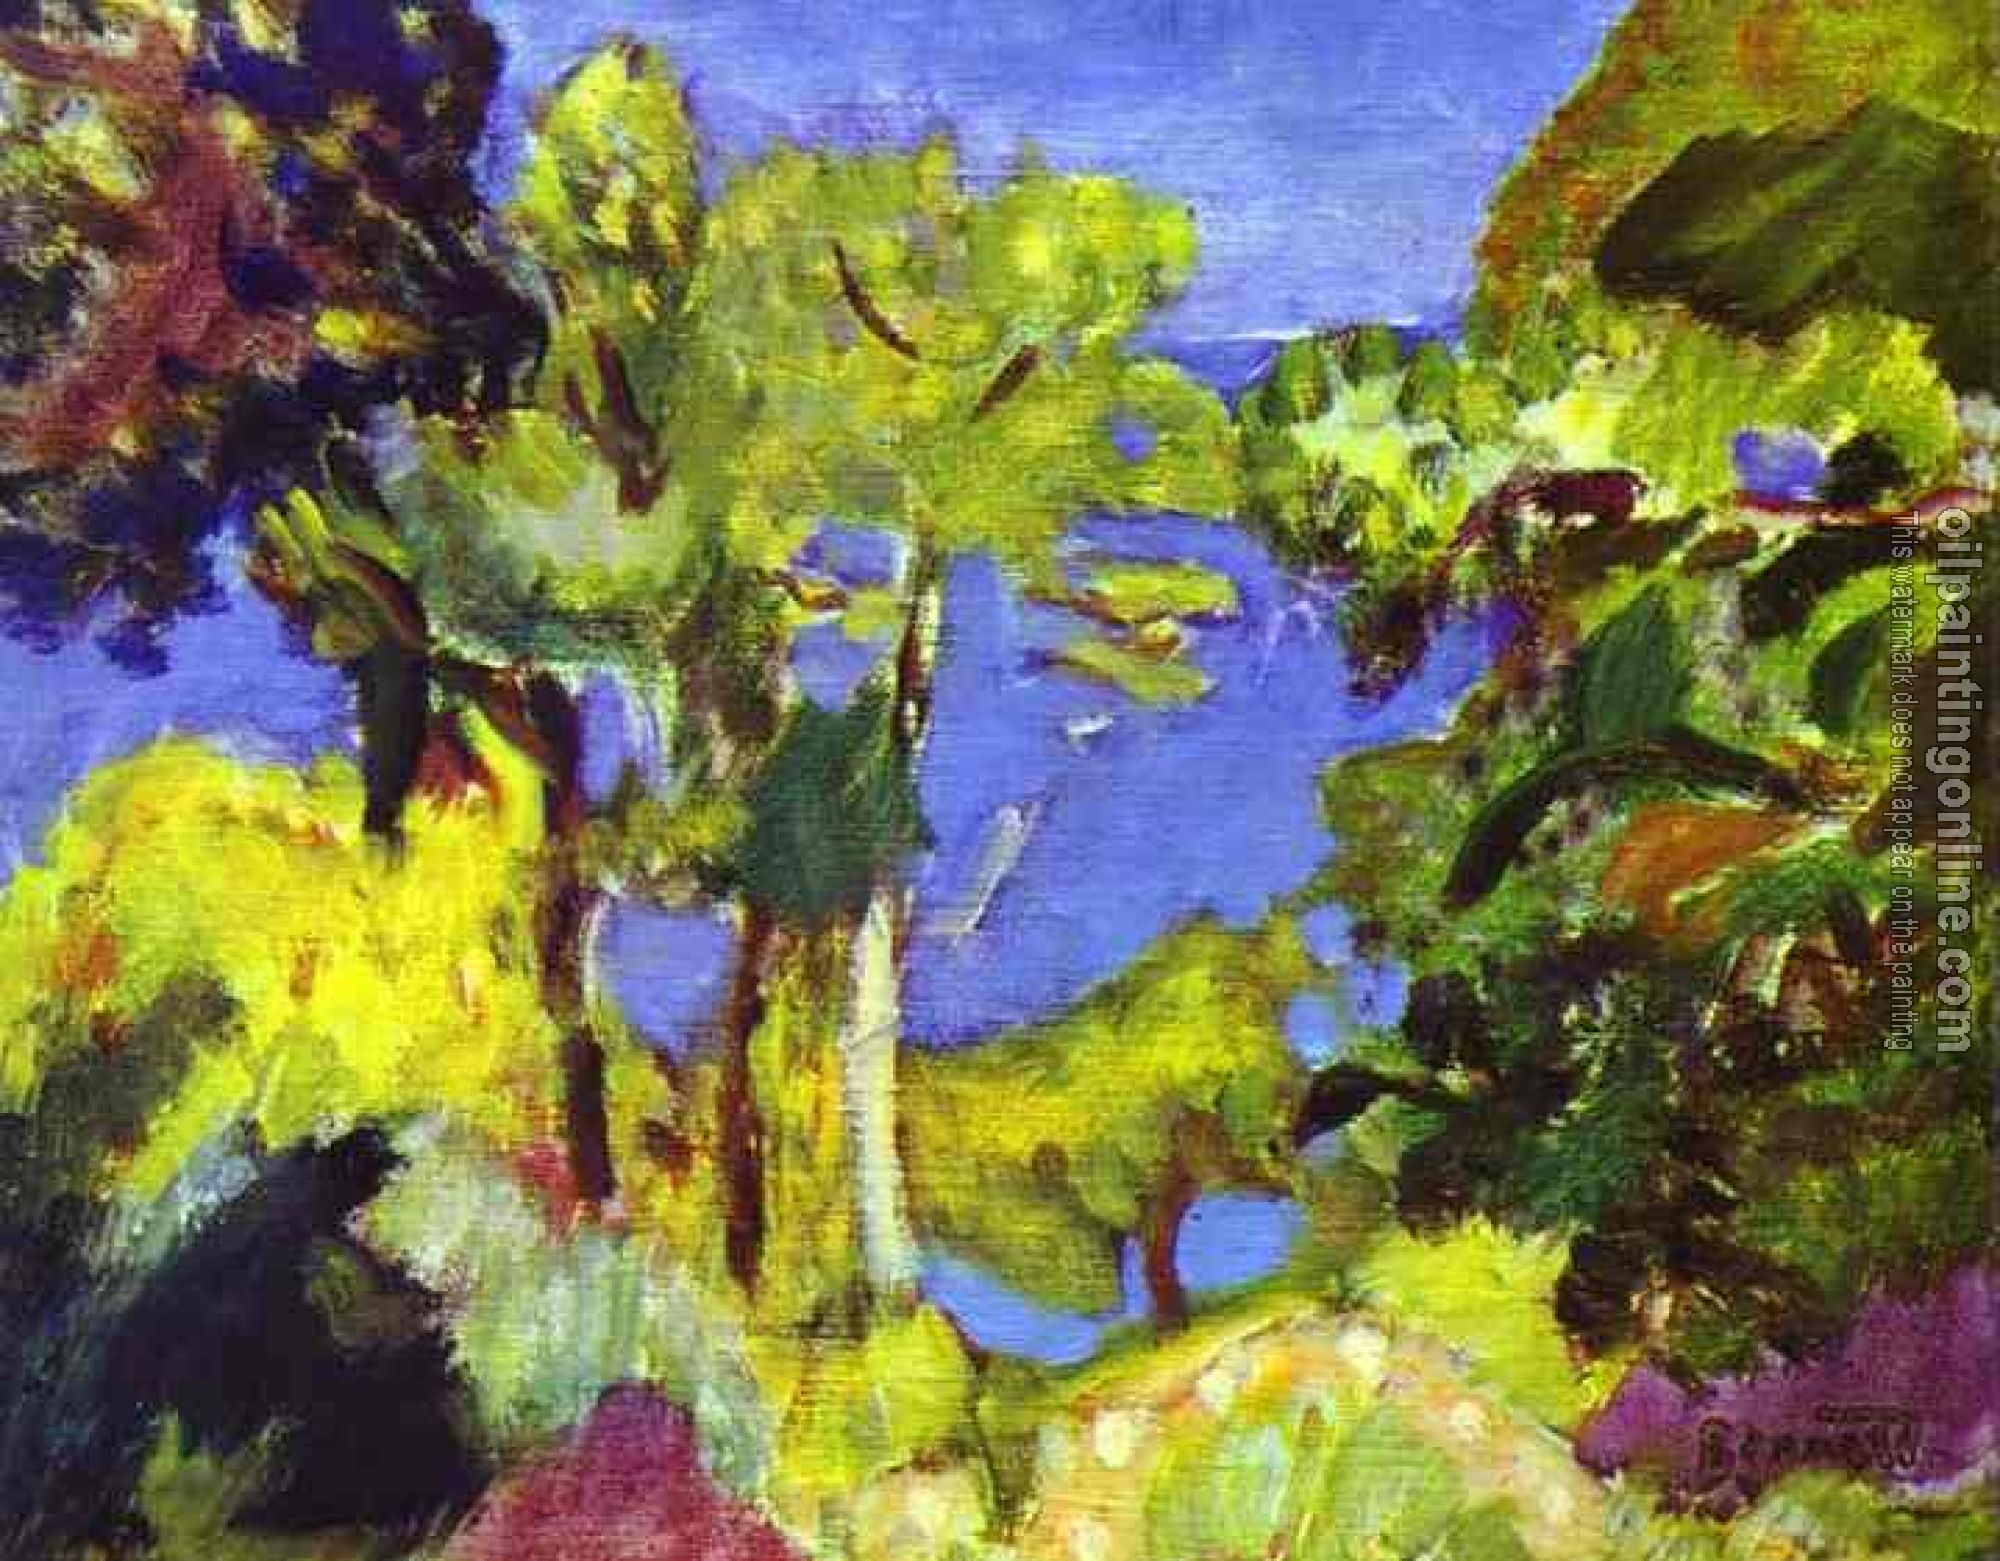 Pierre Bonnard - Landscape of Cote d Azur